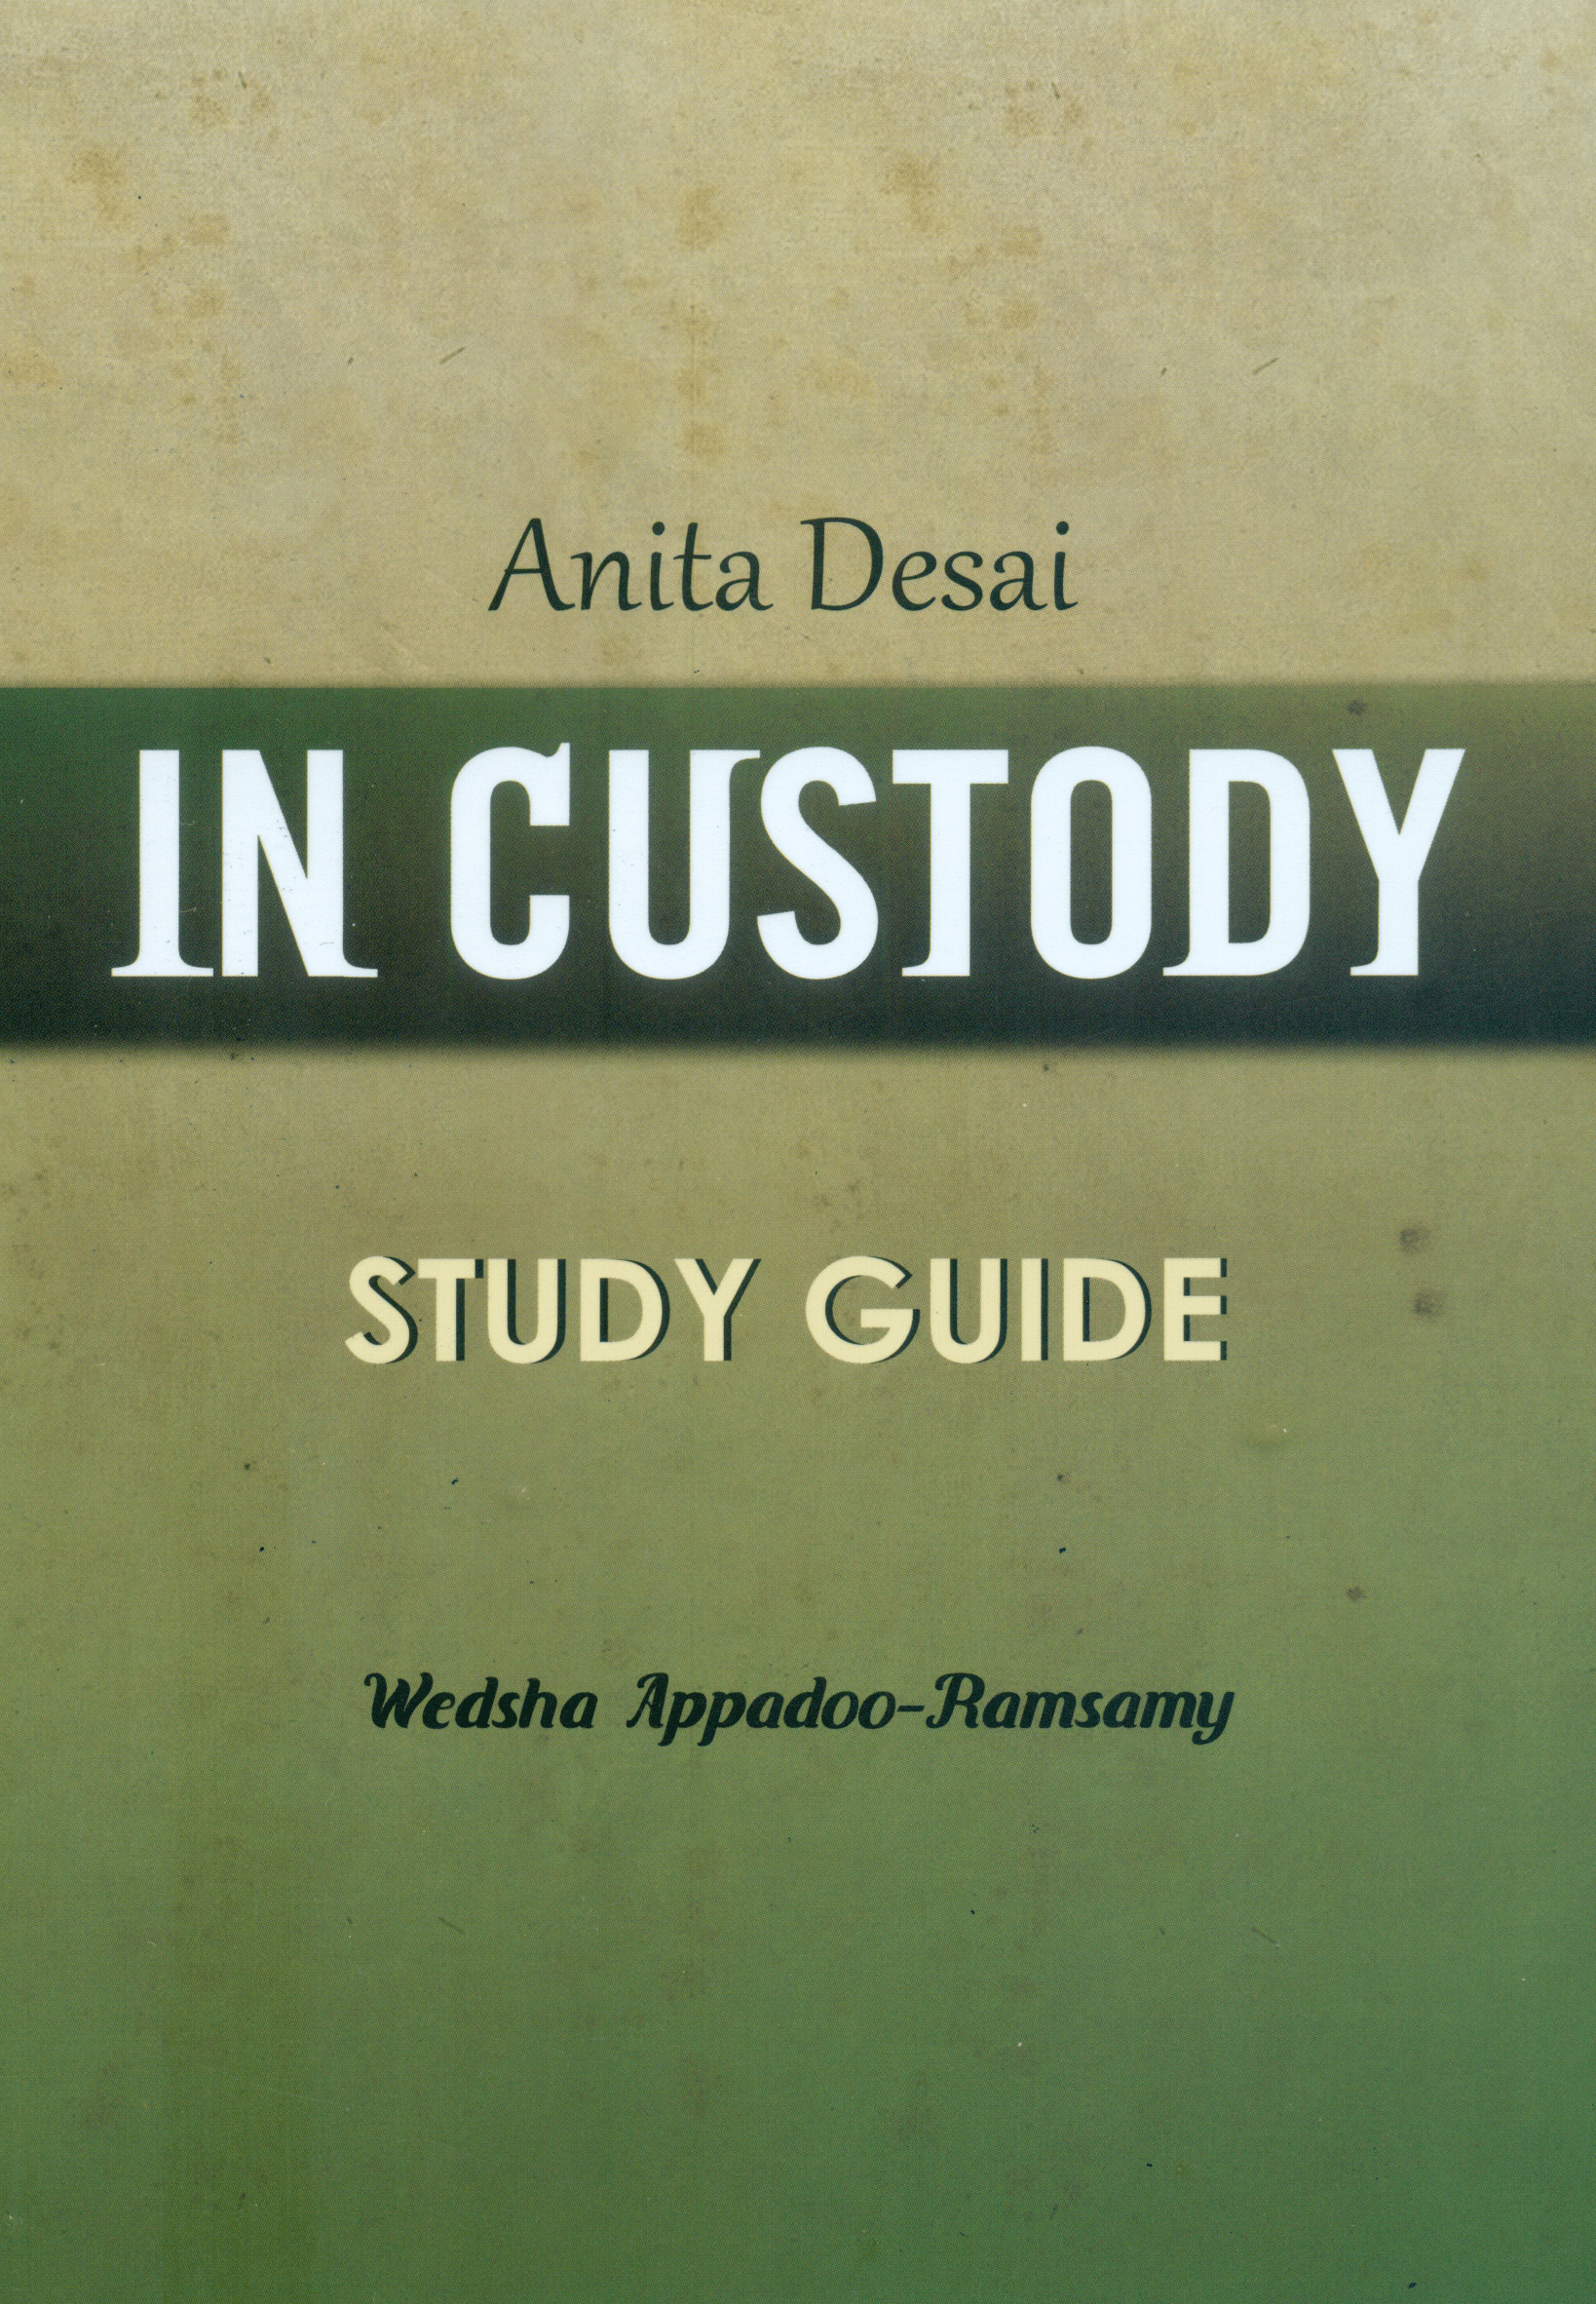 in custody - study guide